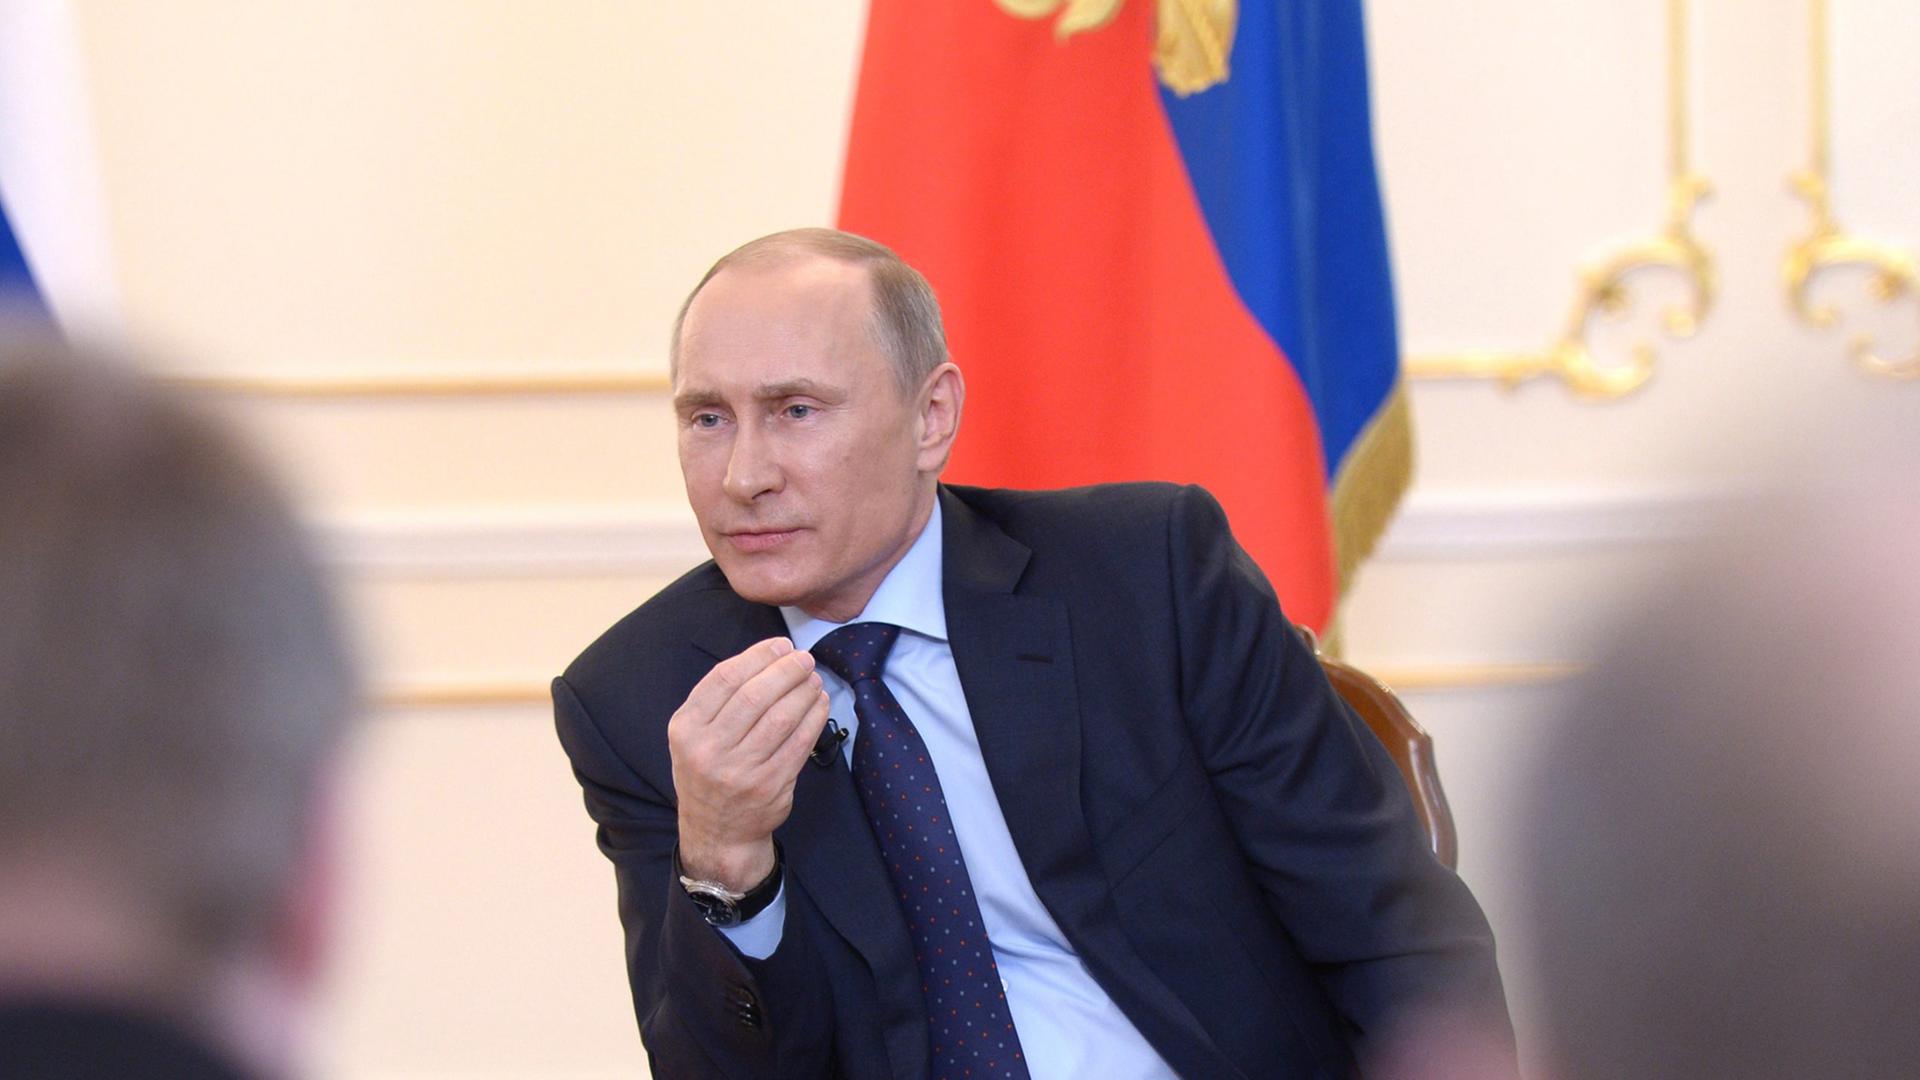 Kremlchef Wladimir Putin hat bei seinem ersten öffentlichen Auftritt in der Krim-Krise betont, er sehe derzeit keinen konkreten Anlass für eine Militäraktion in der Ukraine.